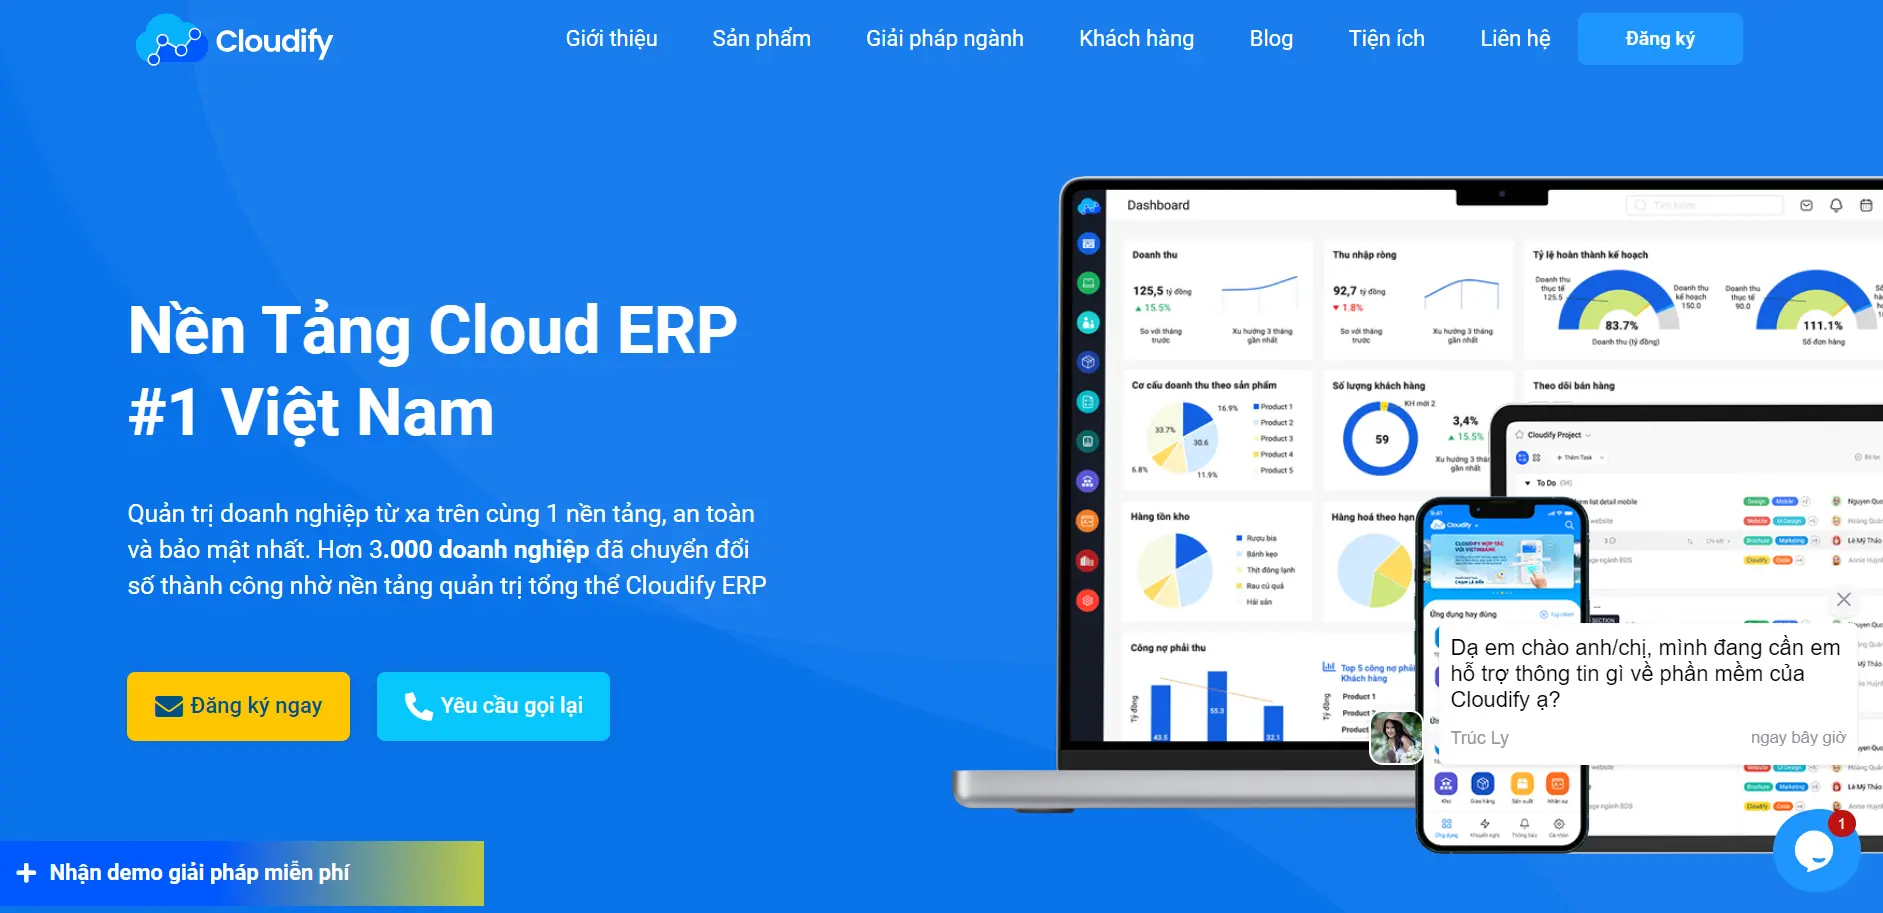 Phần mềm quản lý bán hàng Cloudify